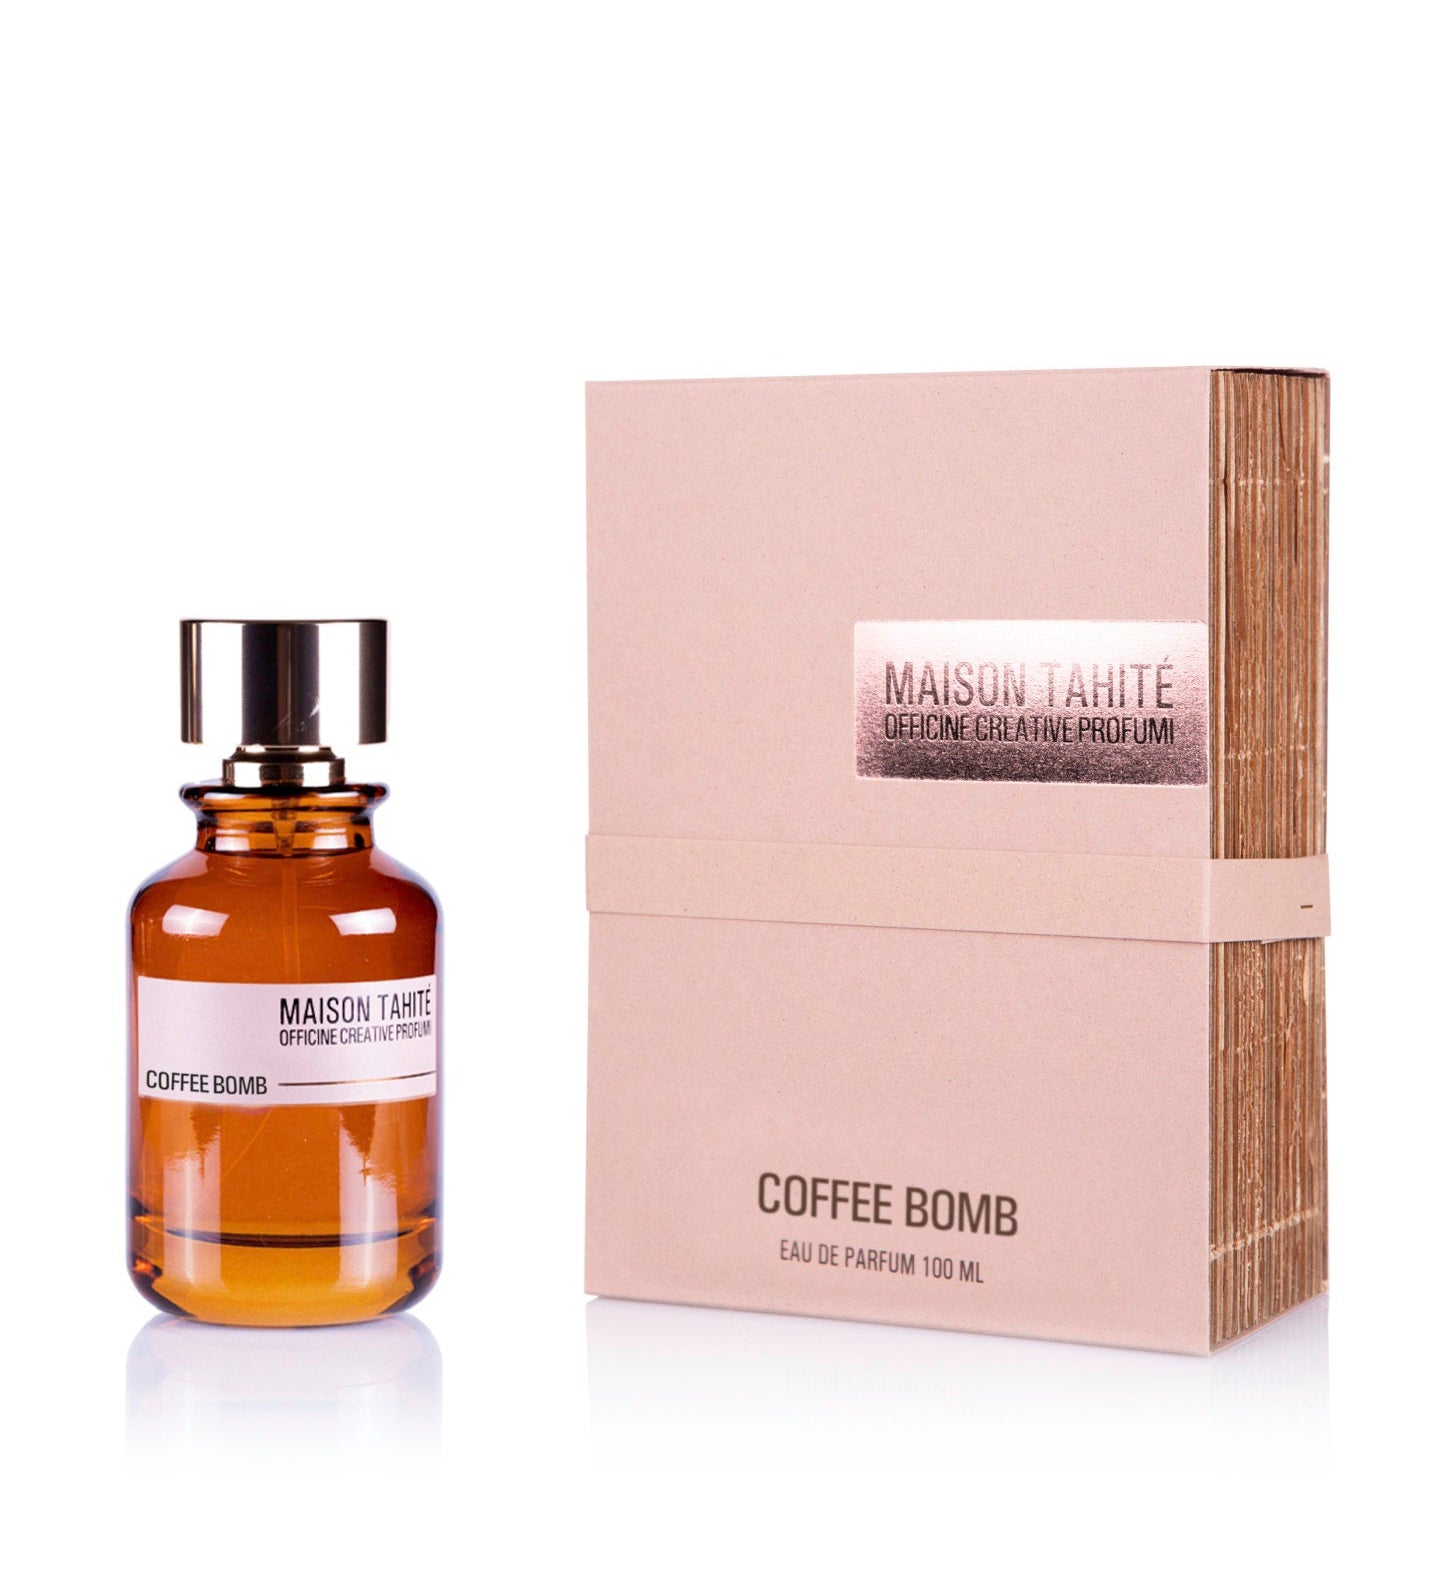 Coffee-bomb-scatola-bottiglia-copia-1448x2048.jpg